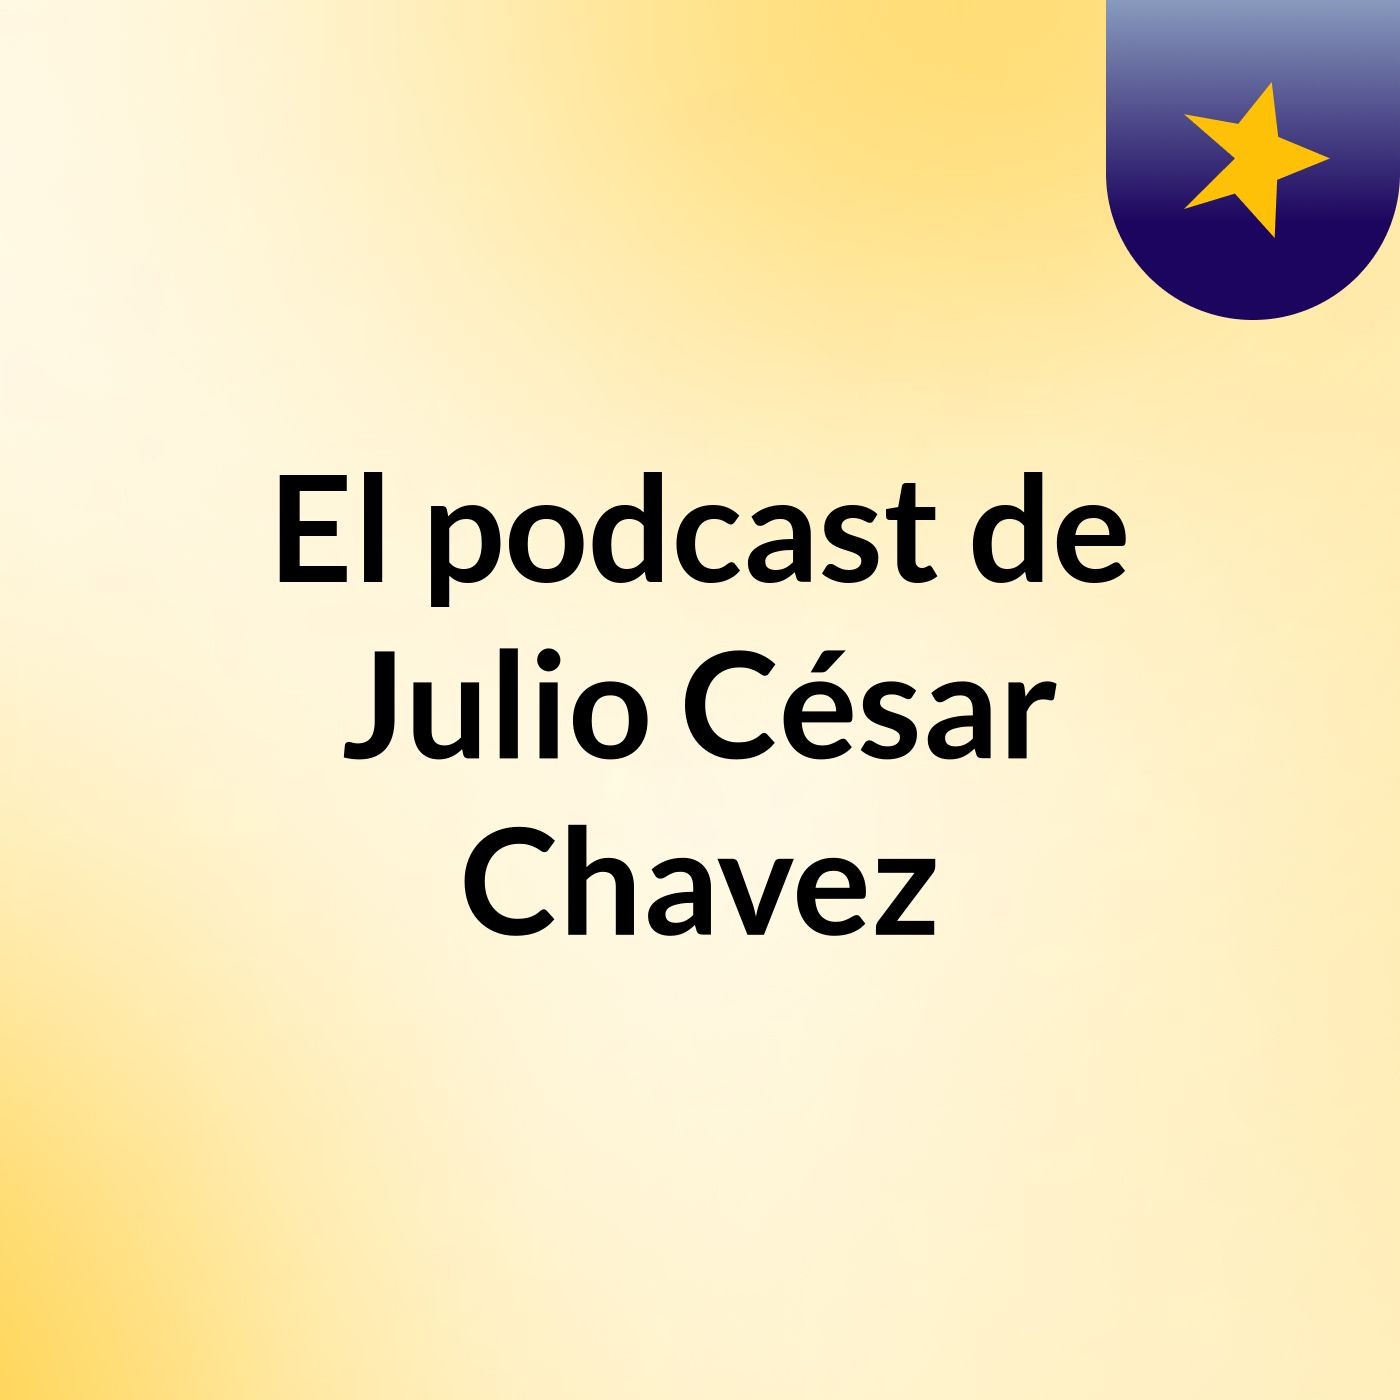 El podcast de Julio César Chavez